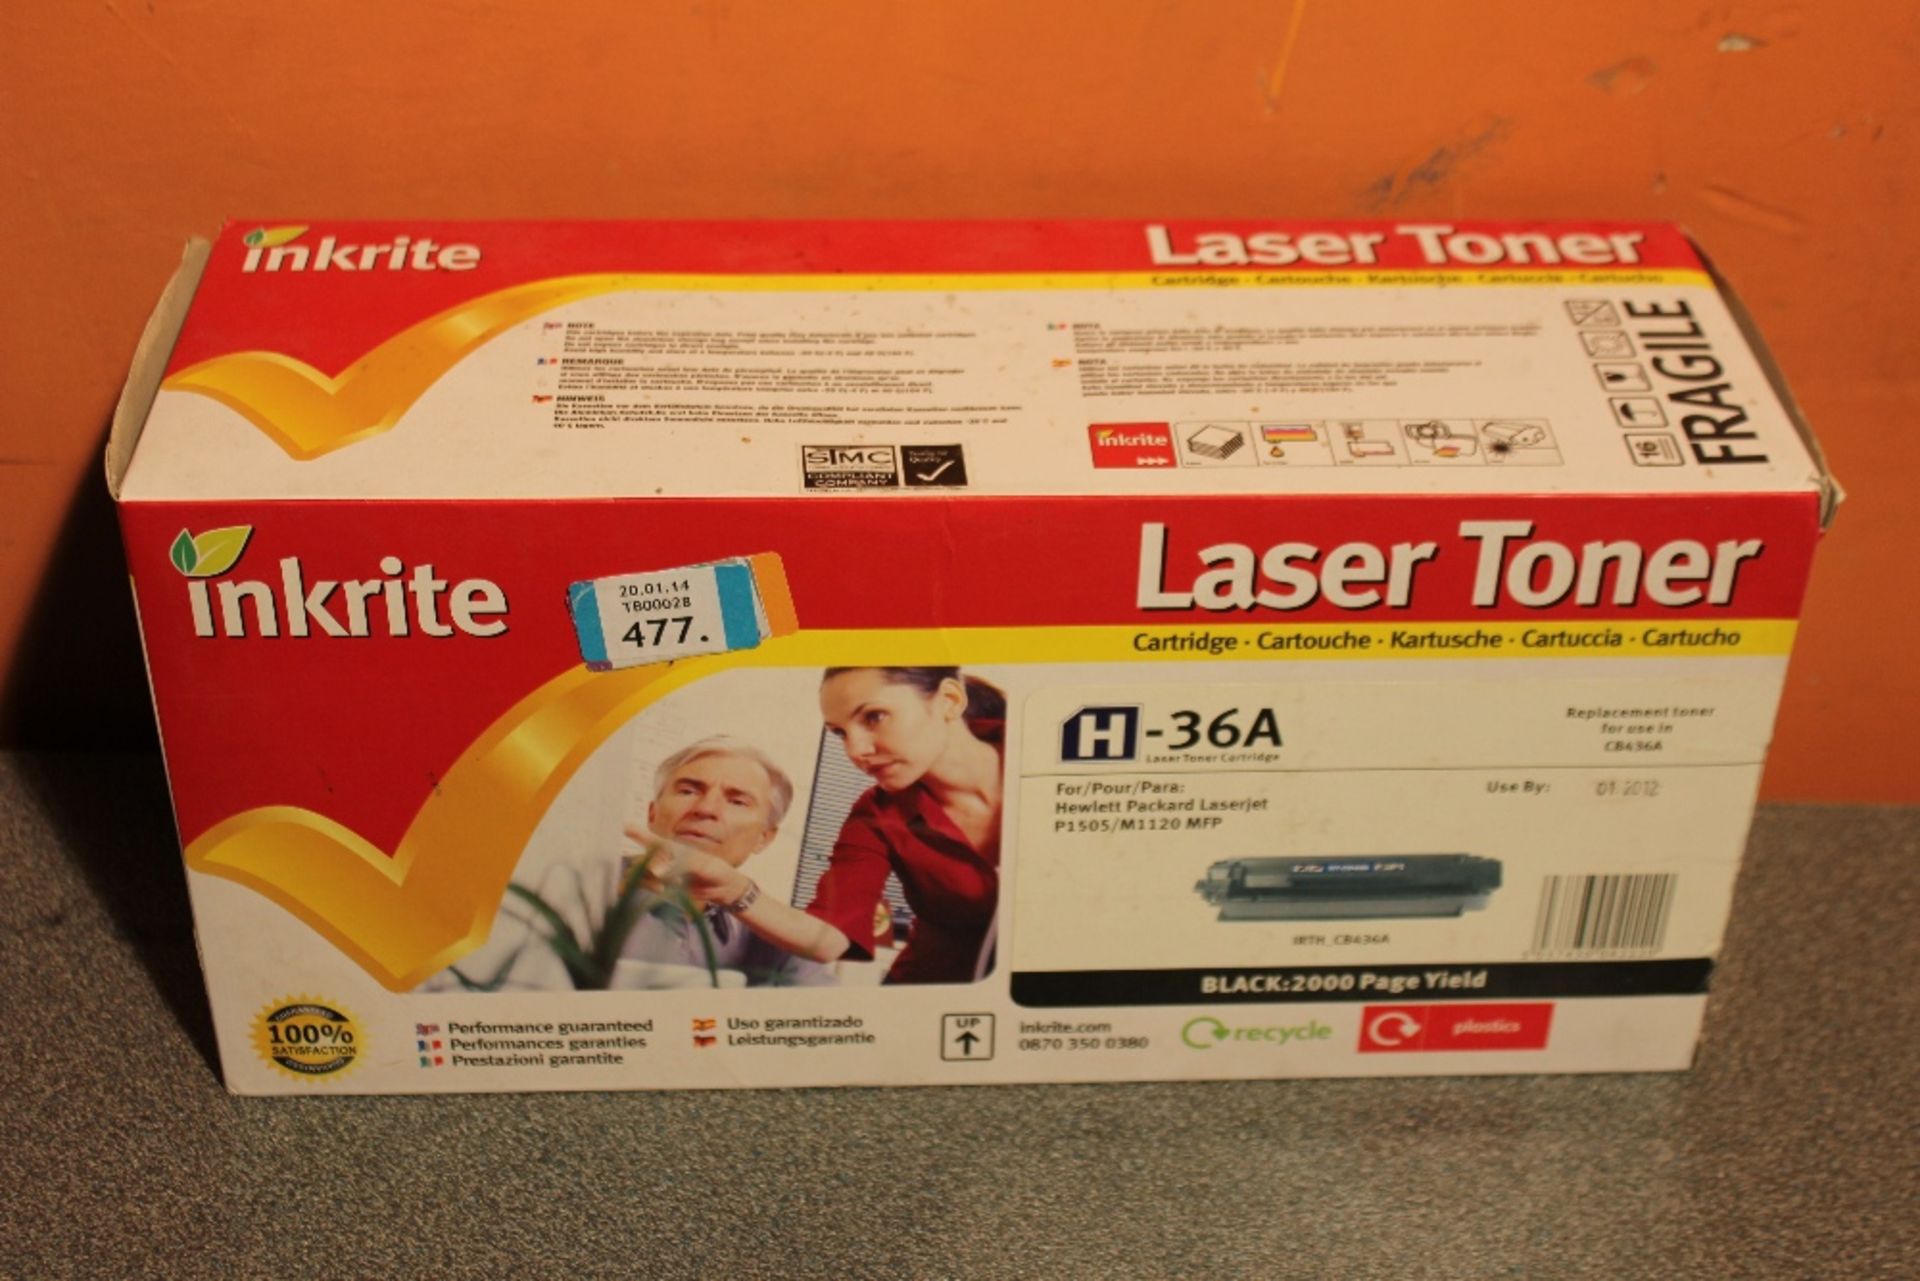 COMPATIBLE  Toner Cartridges For HP Color LaserJet  LaserJet P1505 / M1120 MFP - Sealed In Box